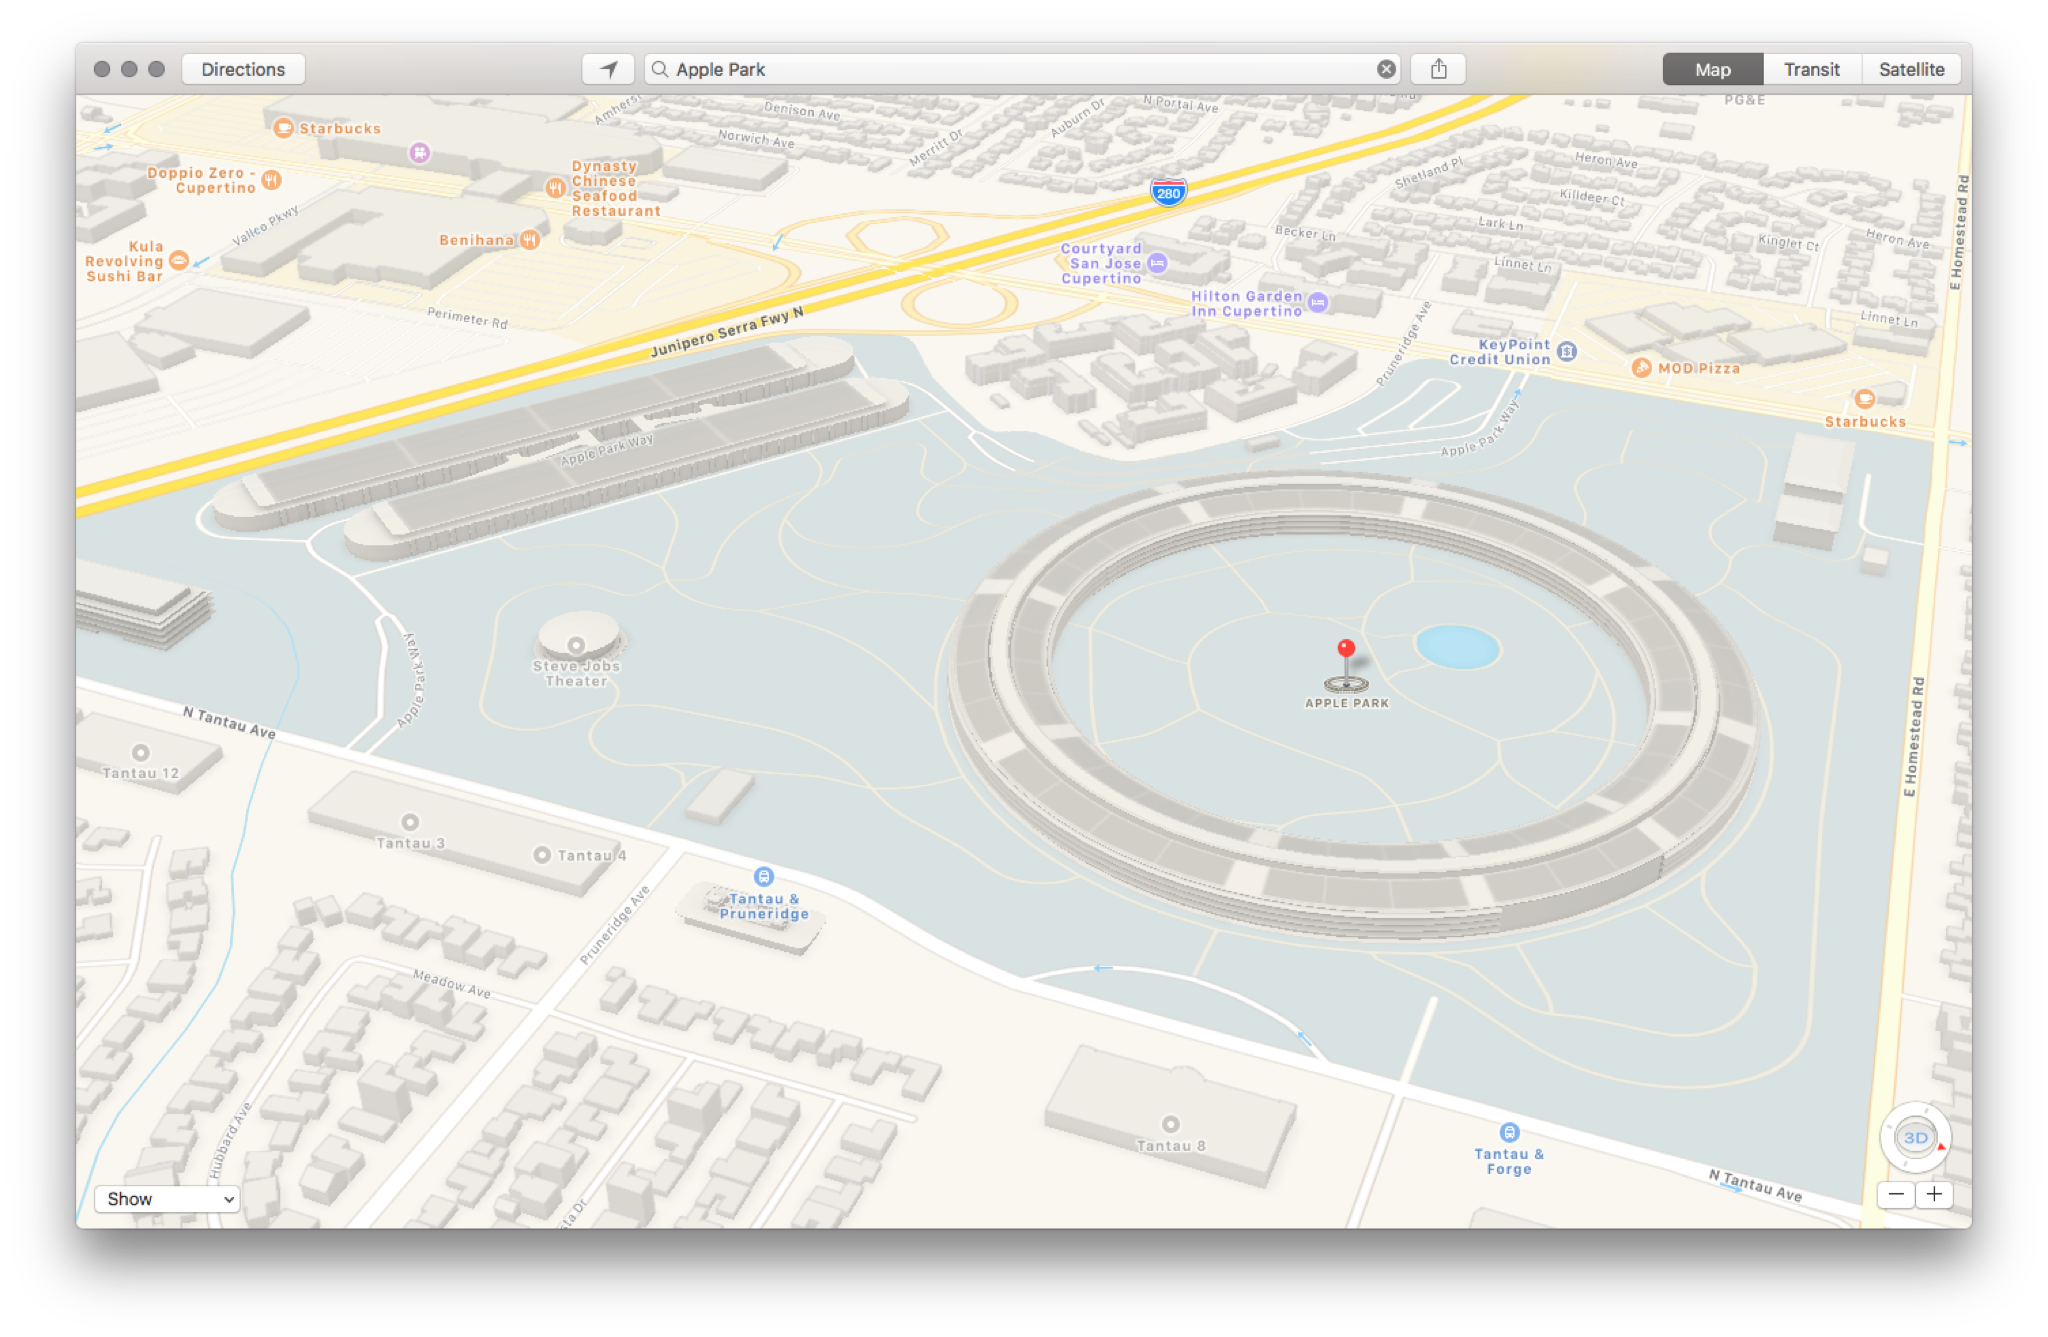 Apple Park on Apple Maps